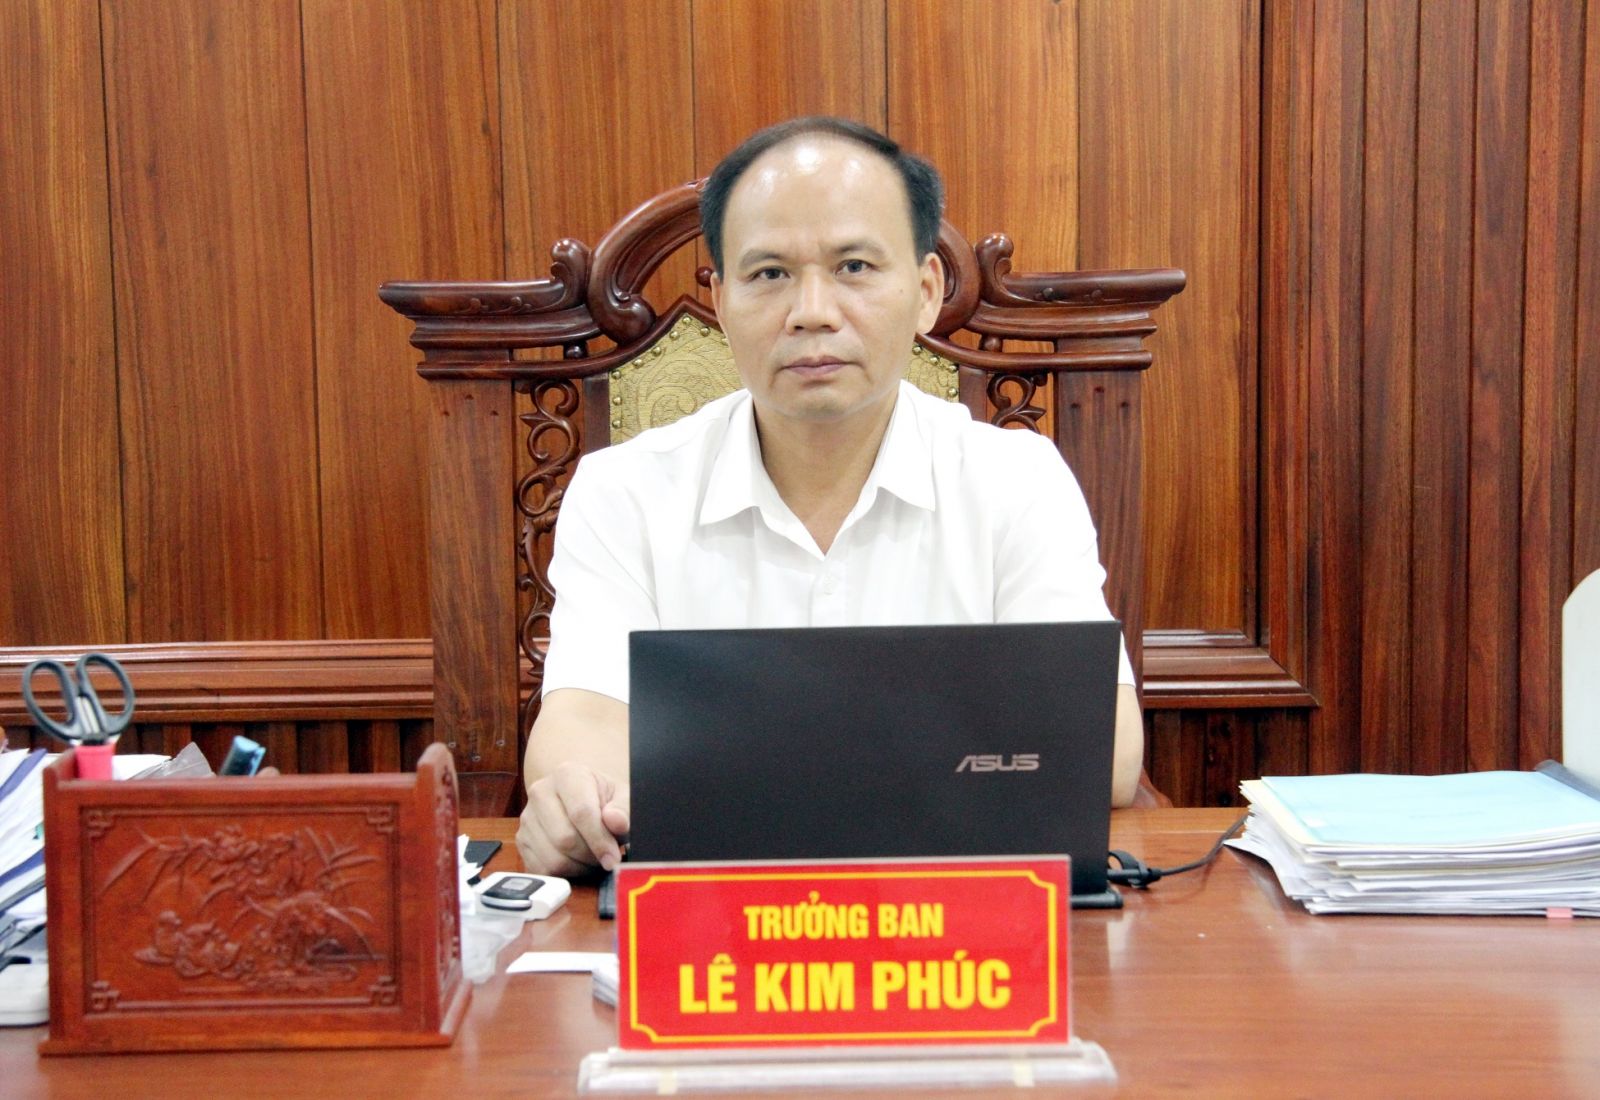 Ông Lê Kim Phúc, Trưởng ban quản lý các Khu công nghiệp tỉnh Thái Nguyên